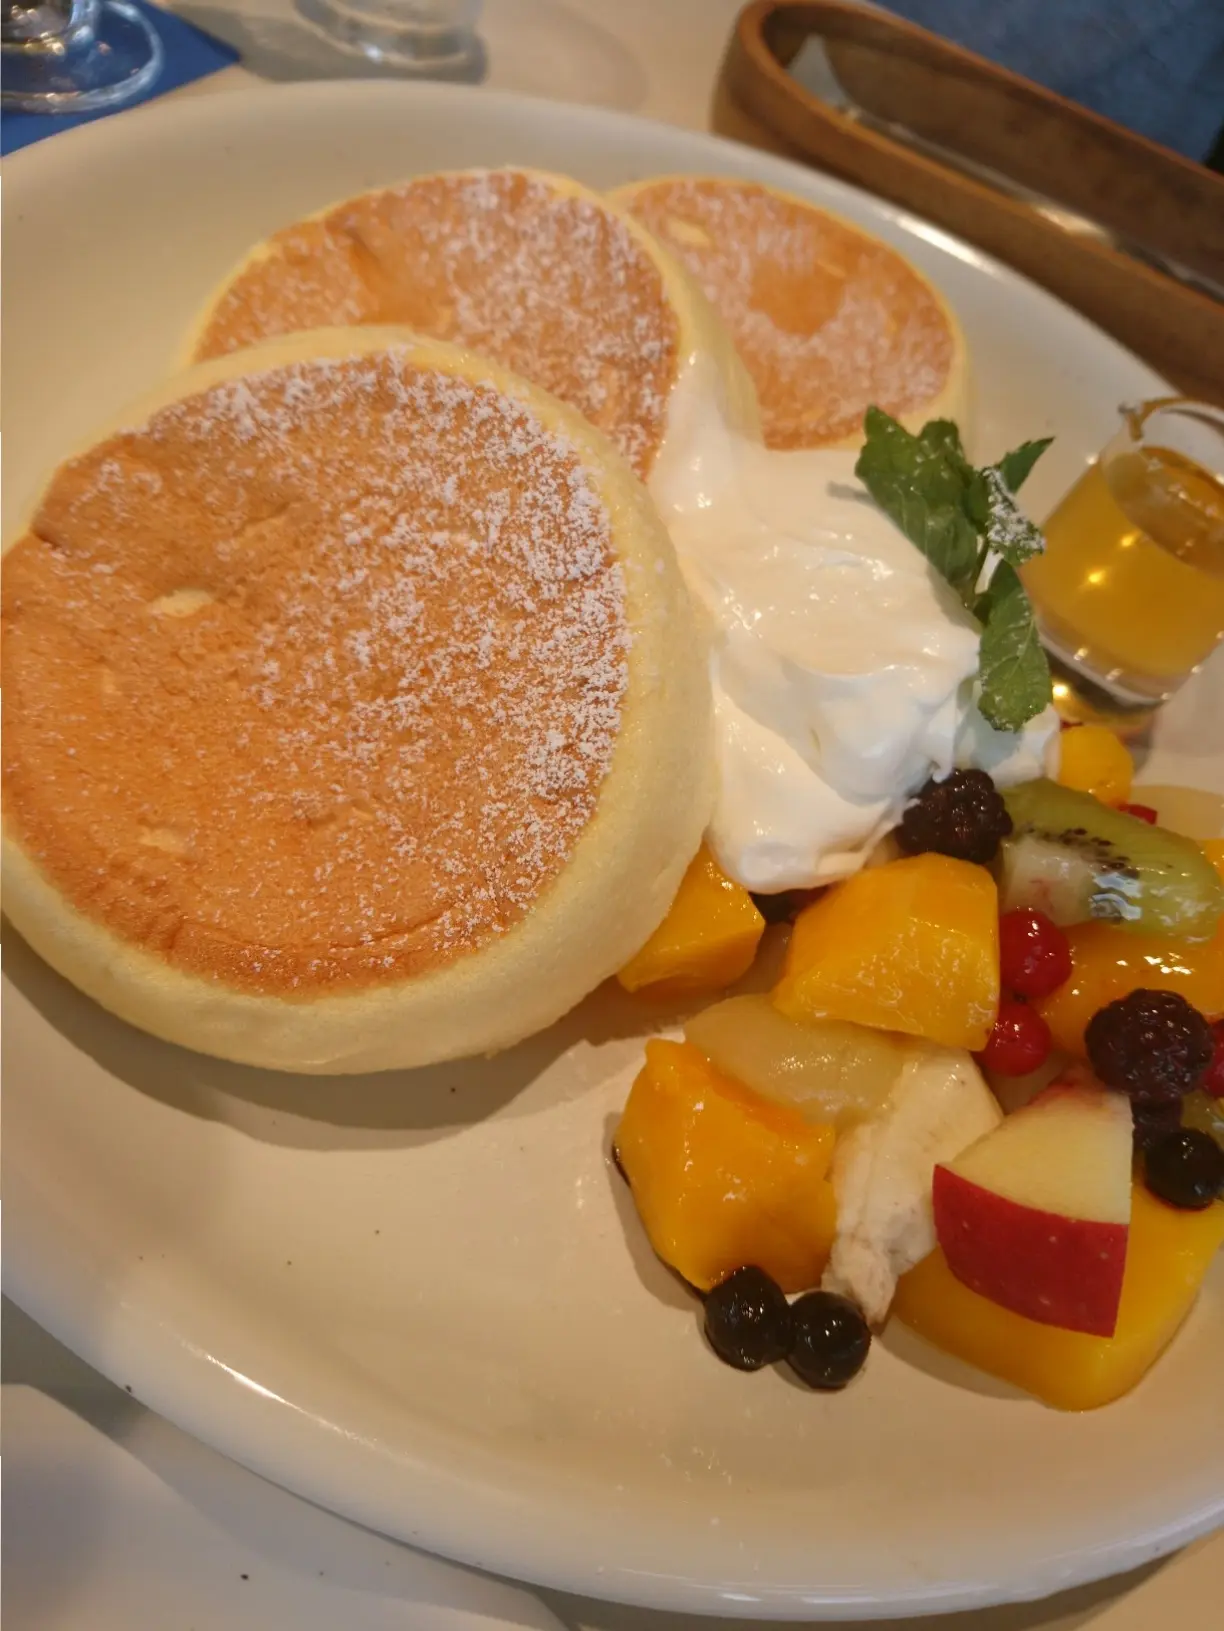 兵庫県 西宮 海を眺める 映え カフェでいただく ふわふわパンケーキが美味 Moreインフルエンサーズブログ Daily More